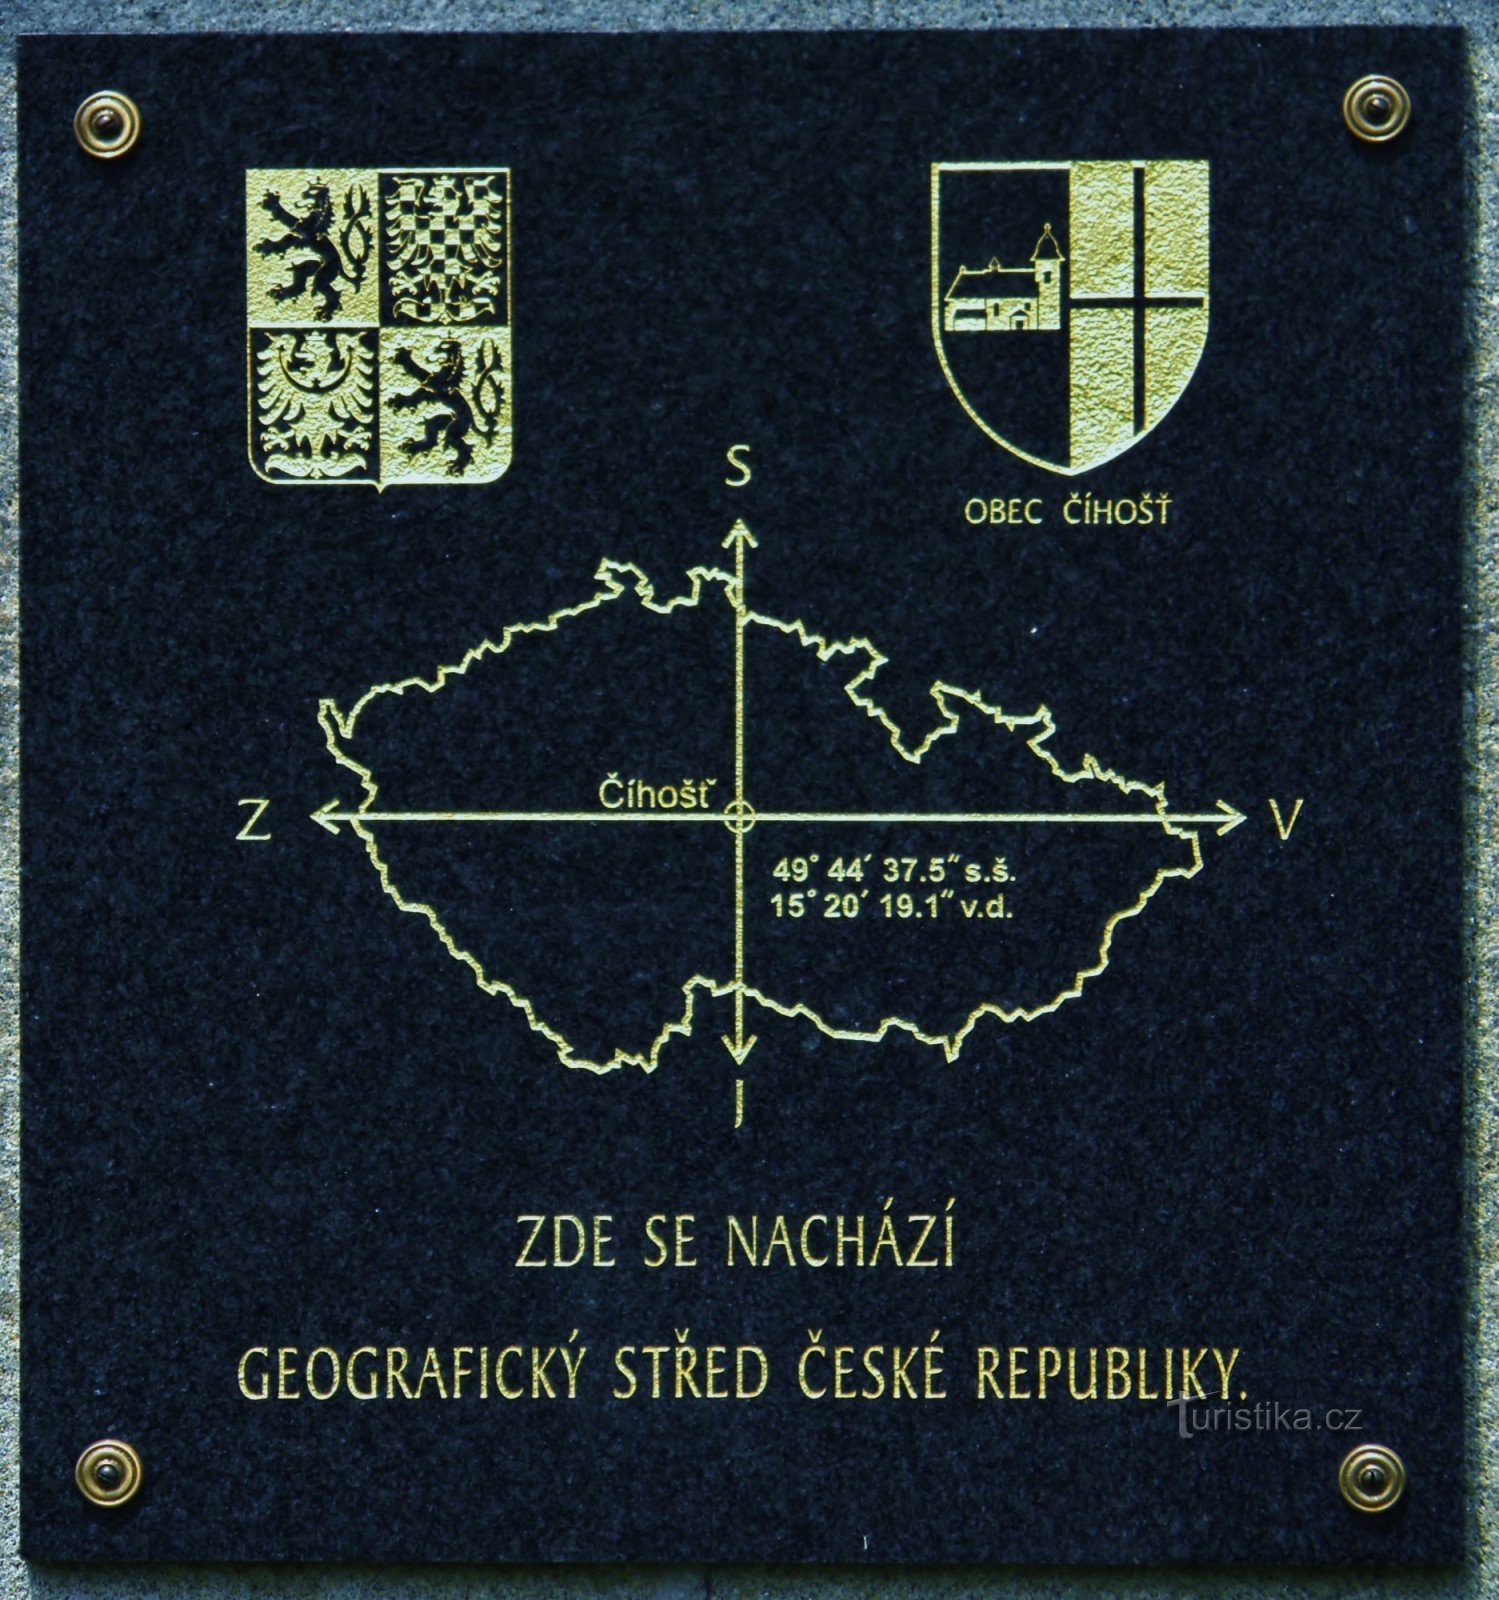 Panou informativ pe un monument de piatră din centrul geografic al Republicii Cehe.